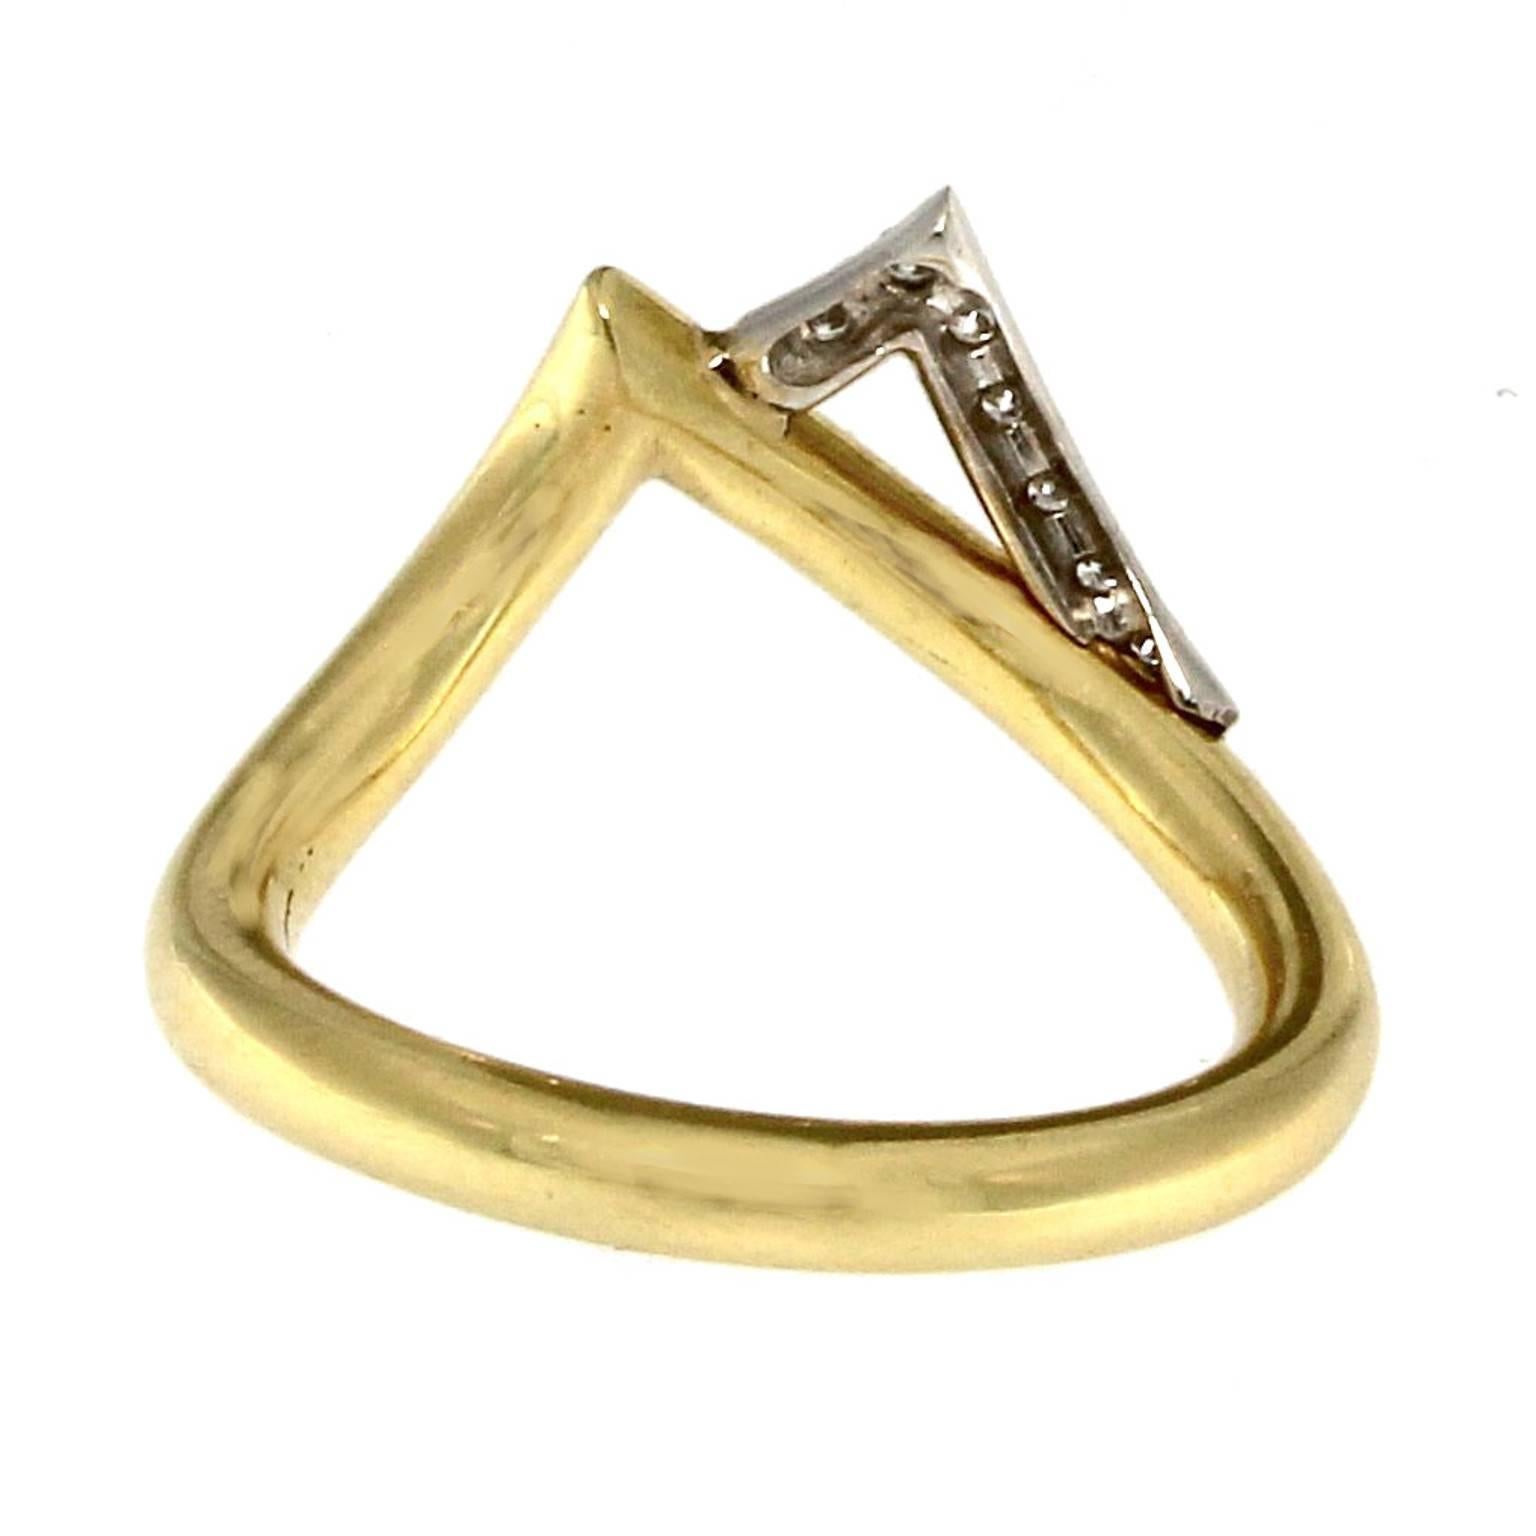 Ring in dünner, runder Fassform, der an das Design der gesamten Collection'S erinnert.
Komplett aus Gelbgold mit einem Fächer aus Weißgold, der mit 7 Diamanten mit einem Gesamtgewicht von 0,07 CT besetzt ist.
Das Gesamtgewicht des Goldes beträgt GR